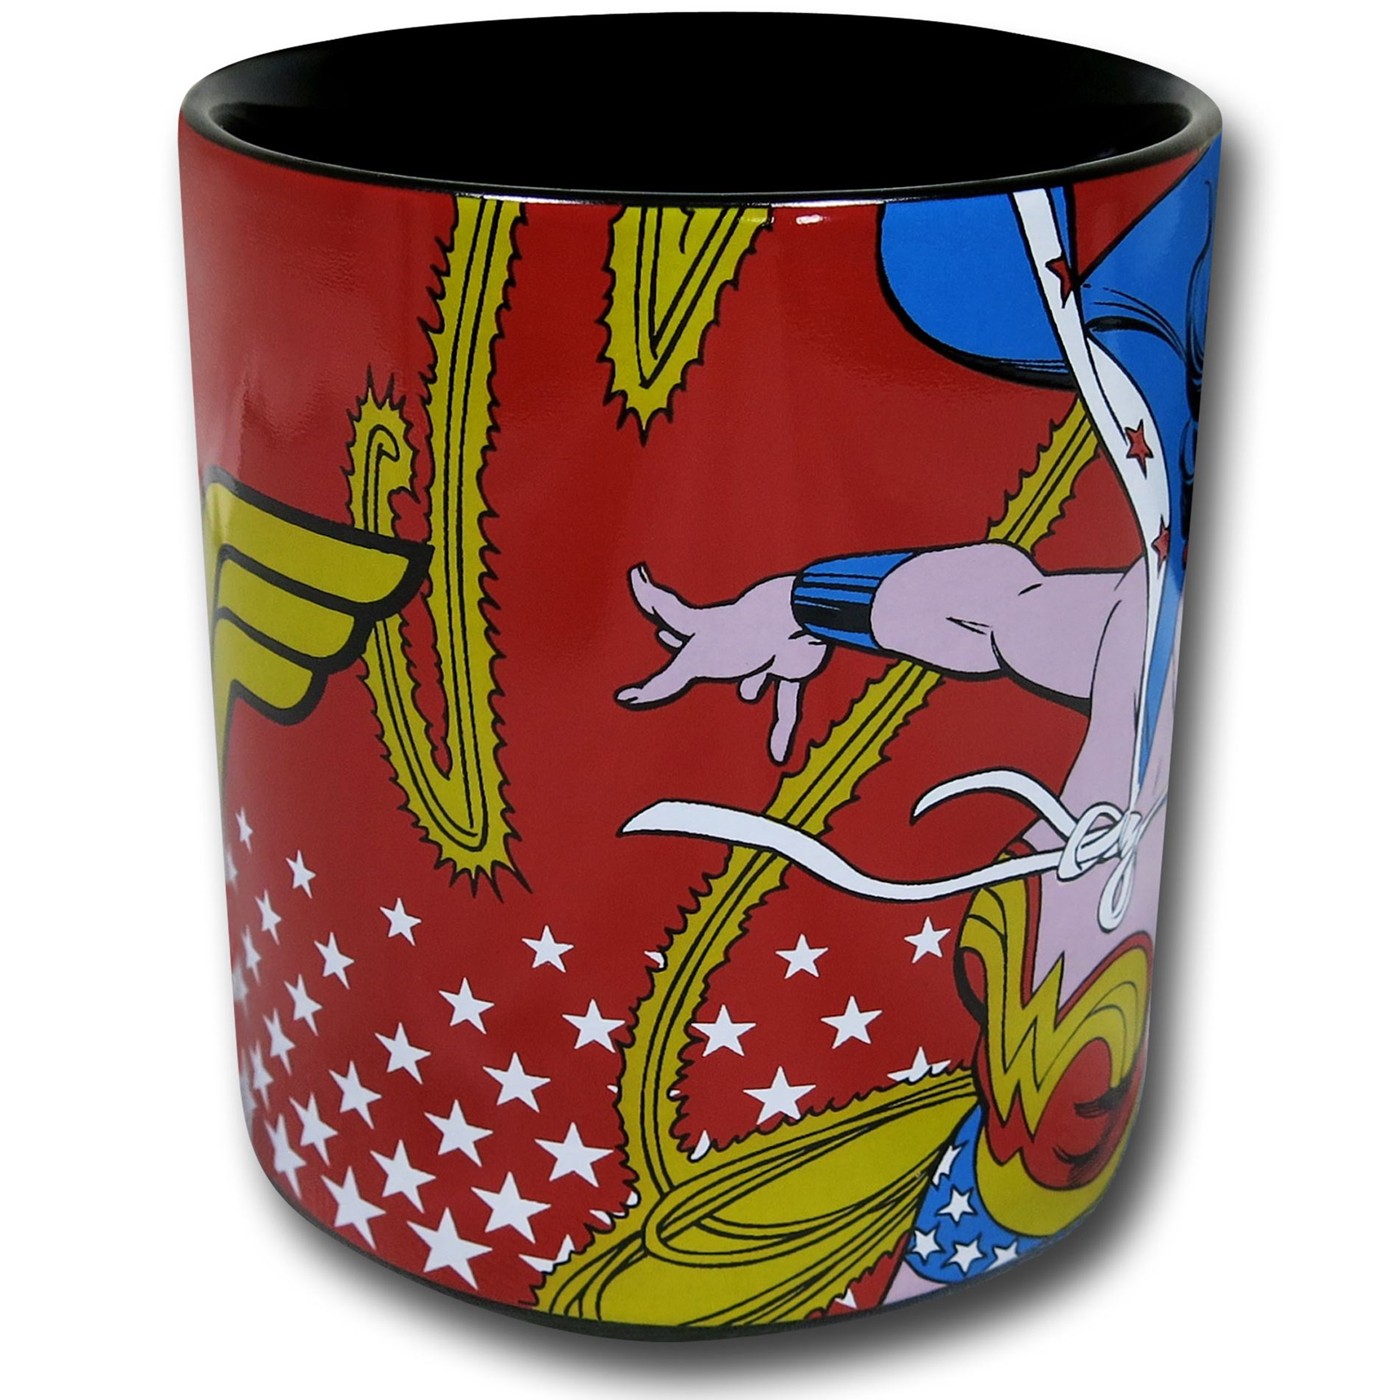 Wonder Woman Image & Symbol Mug